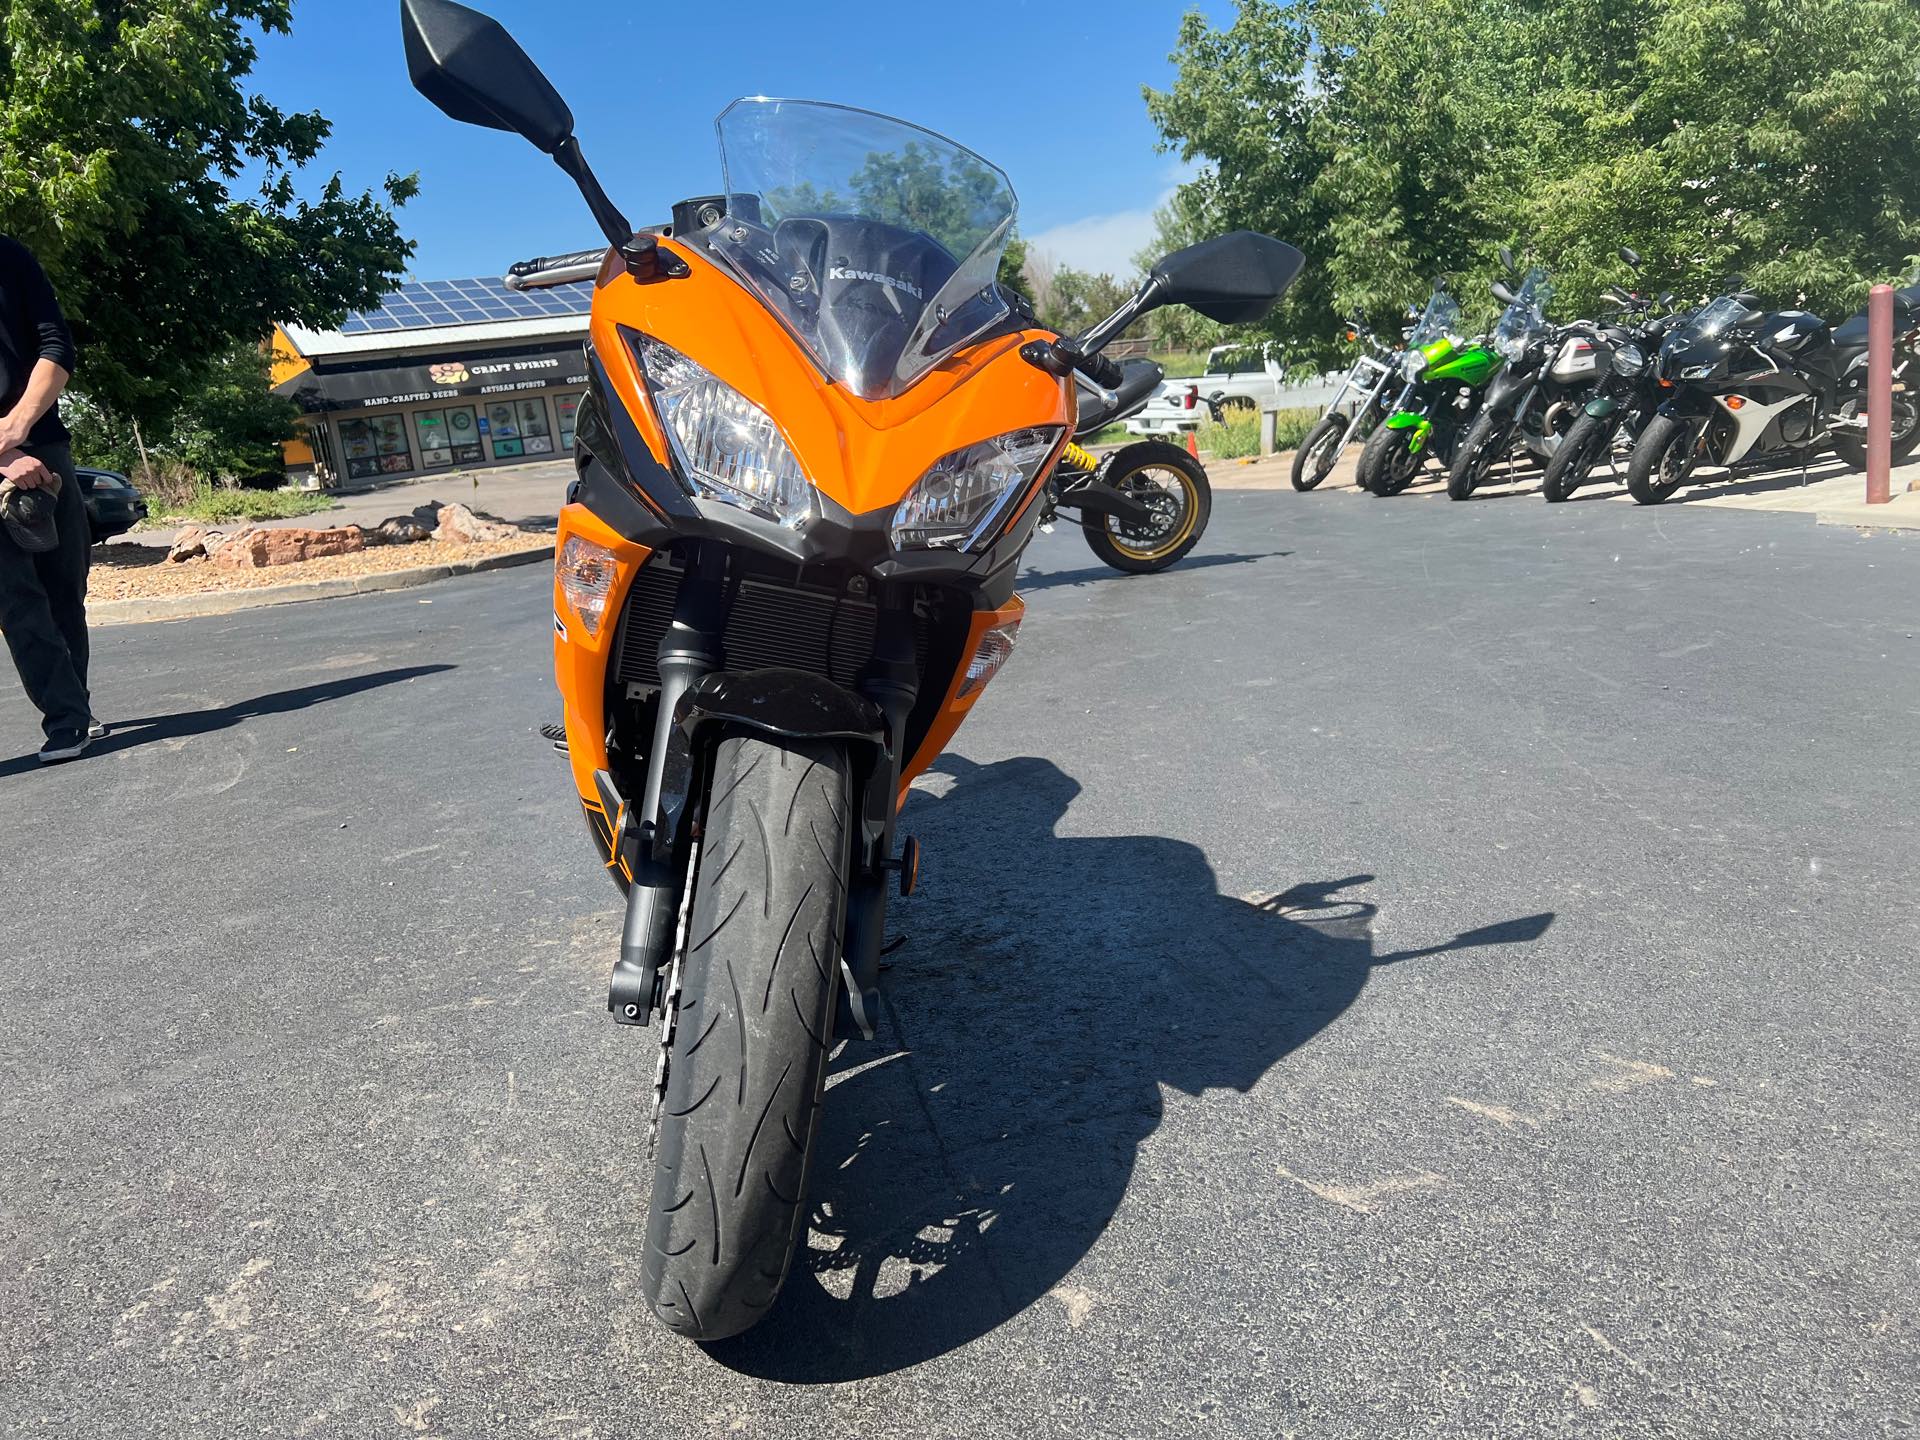 2019 Kawasaki Ninja 650 ABS at Aces Motorcycles - Fort Collins